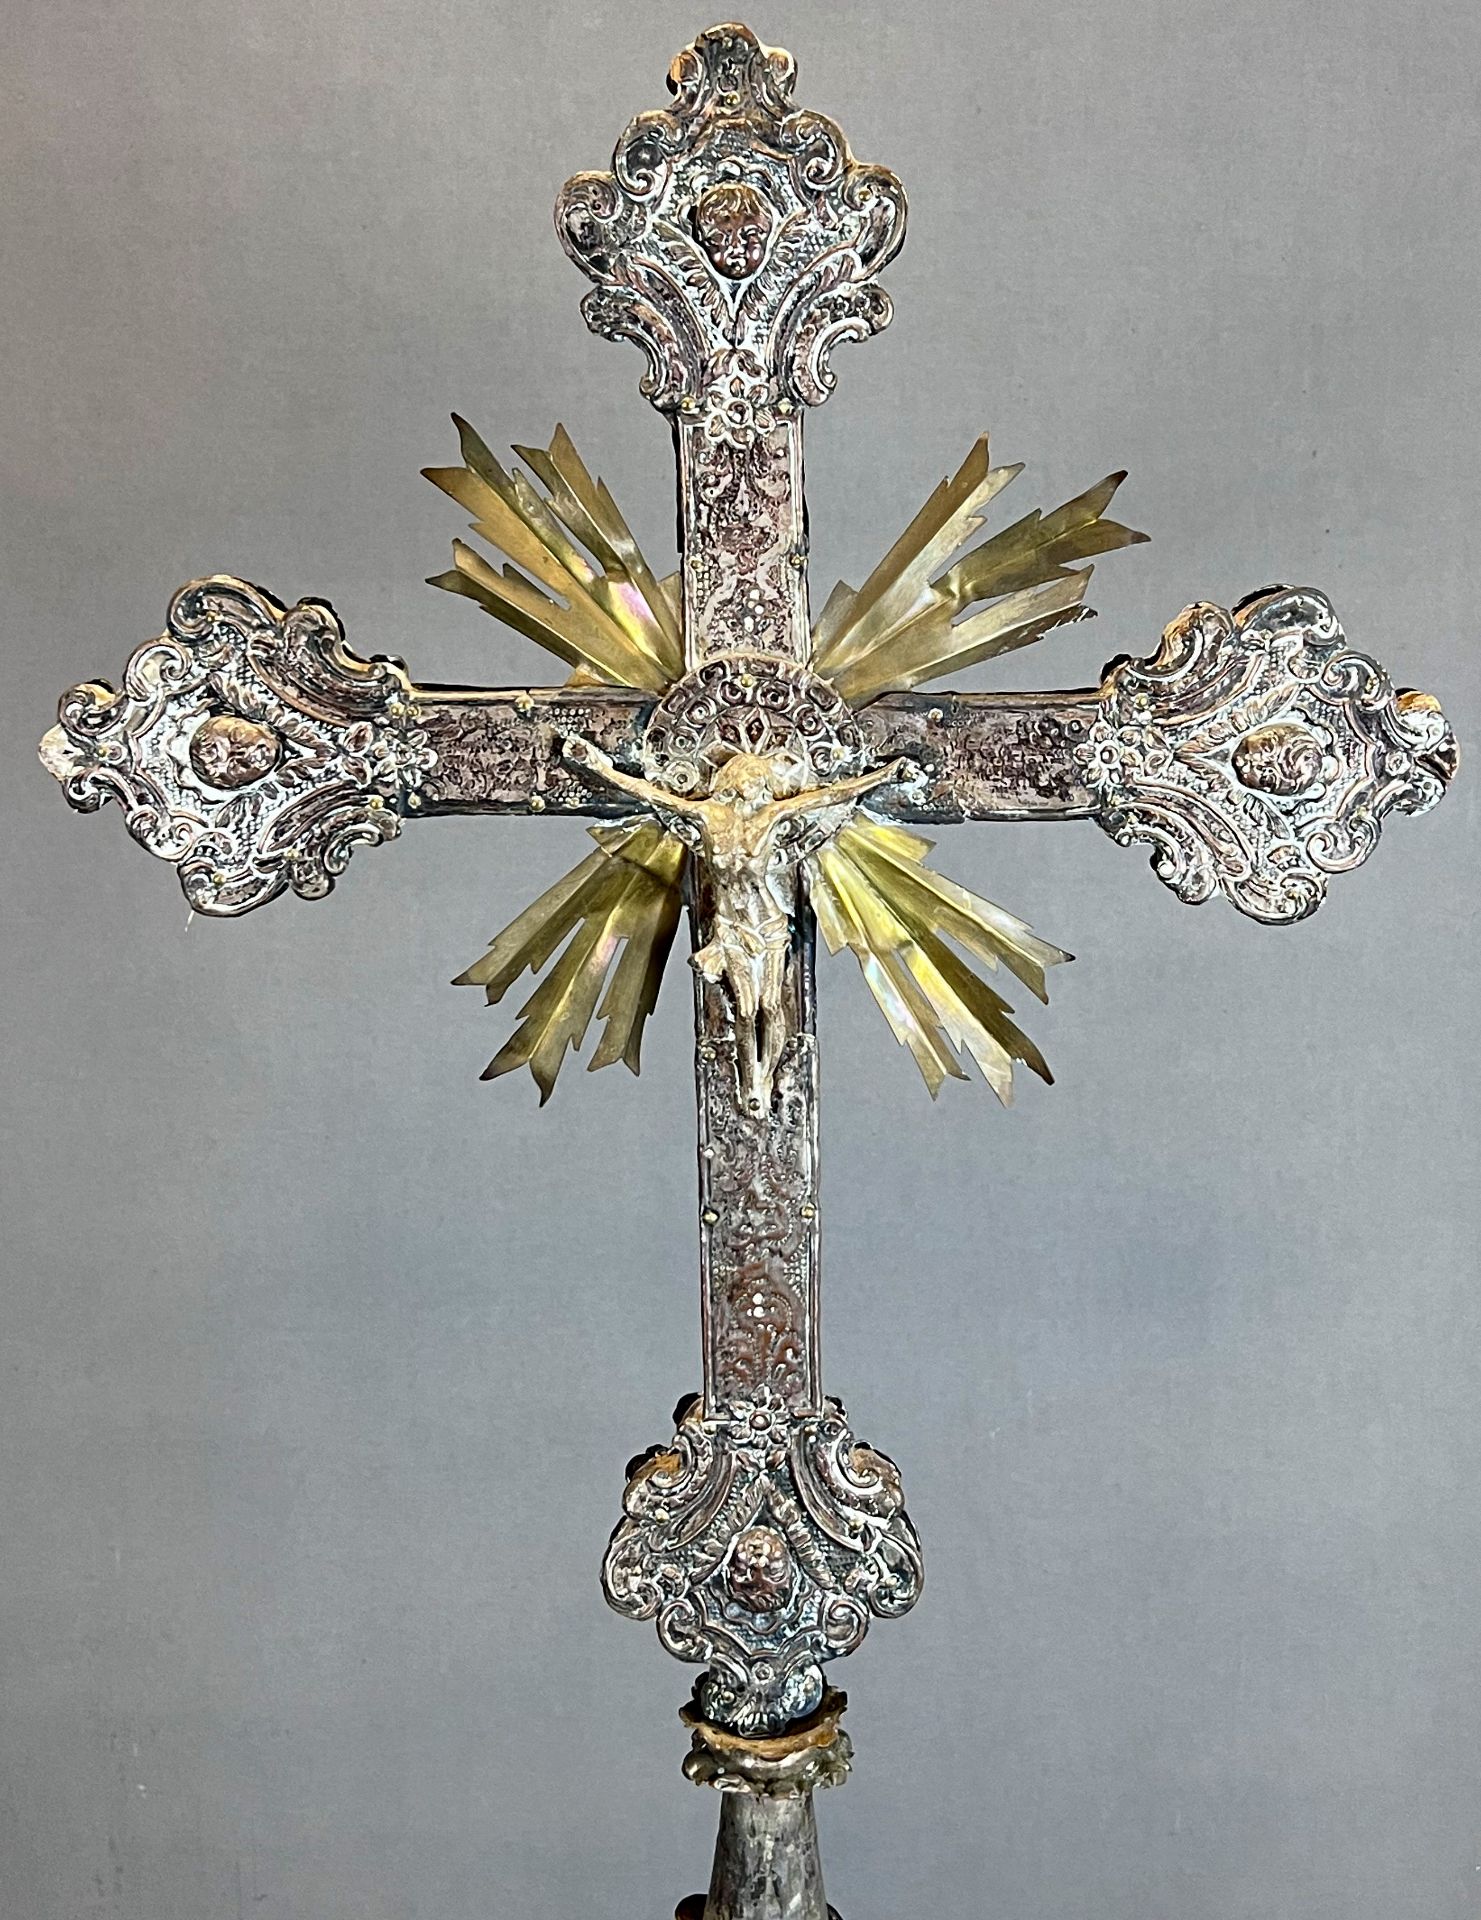 Großes Standkreuz. Altarkreuz. Um 1700. Frankreich. - Bild 2 aus 16